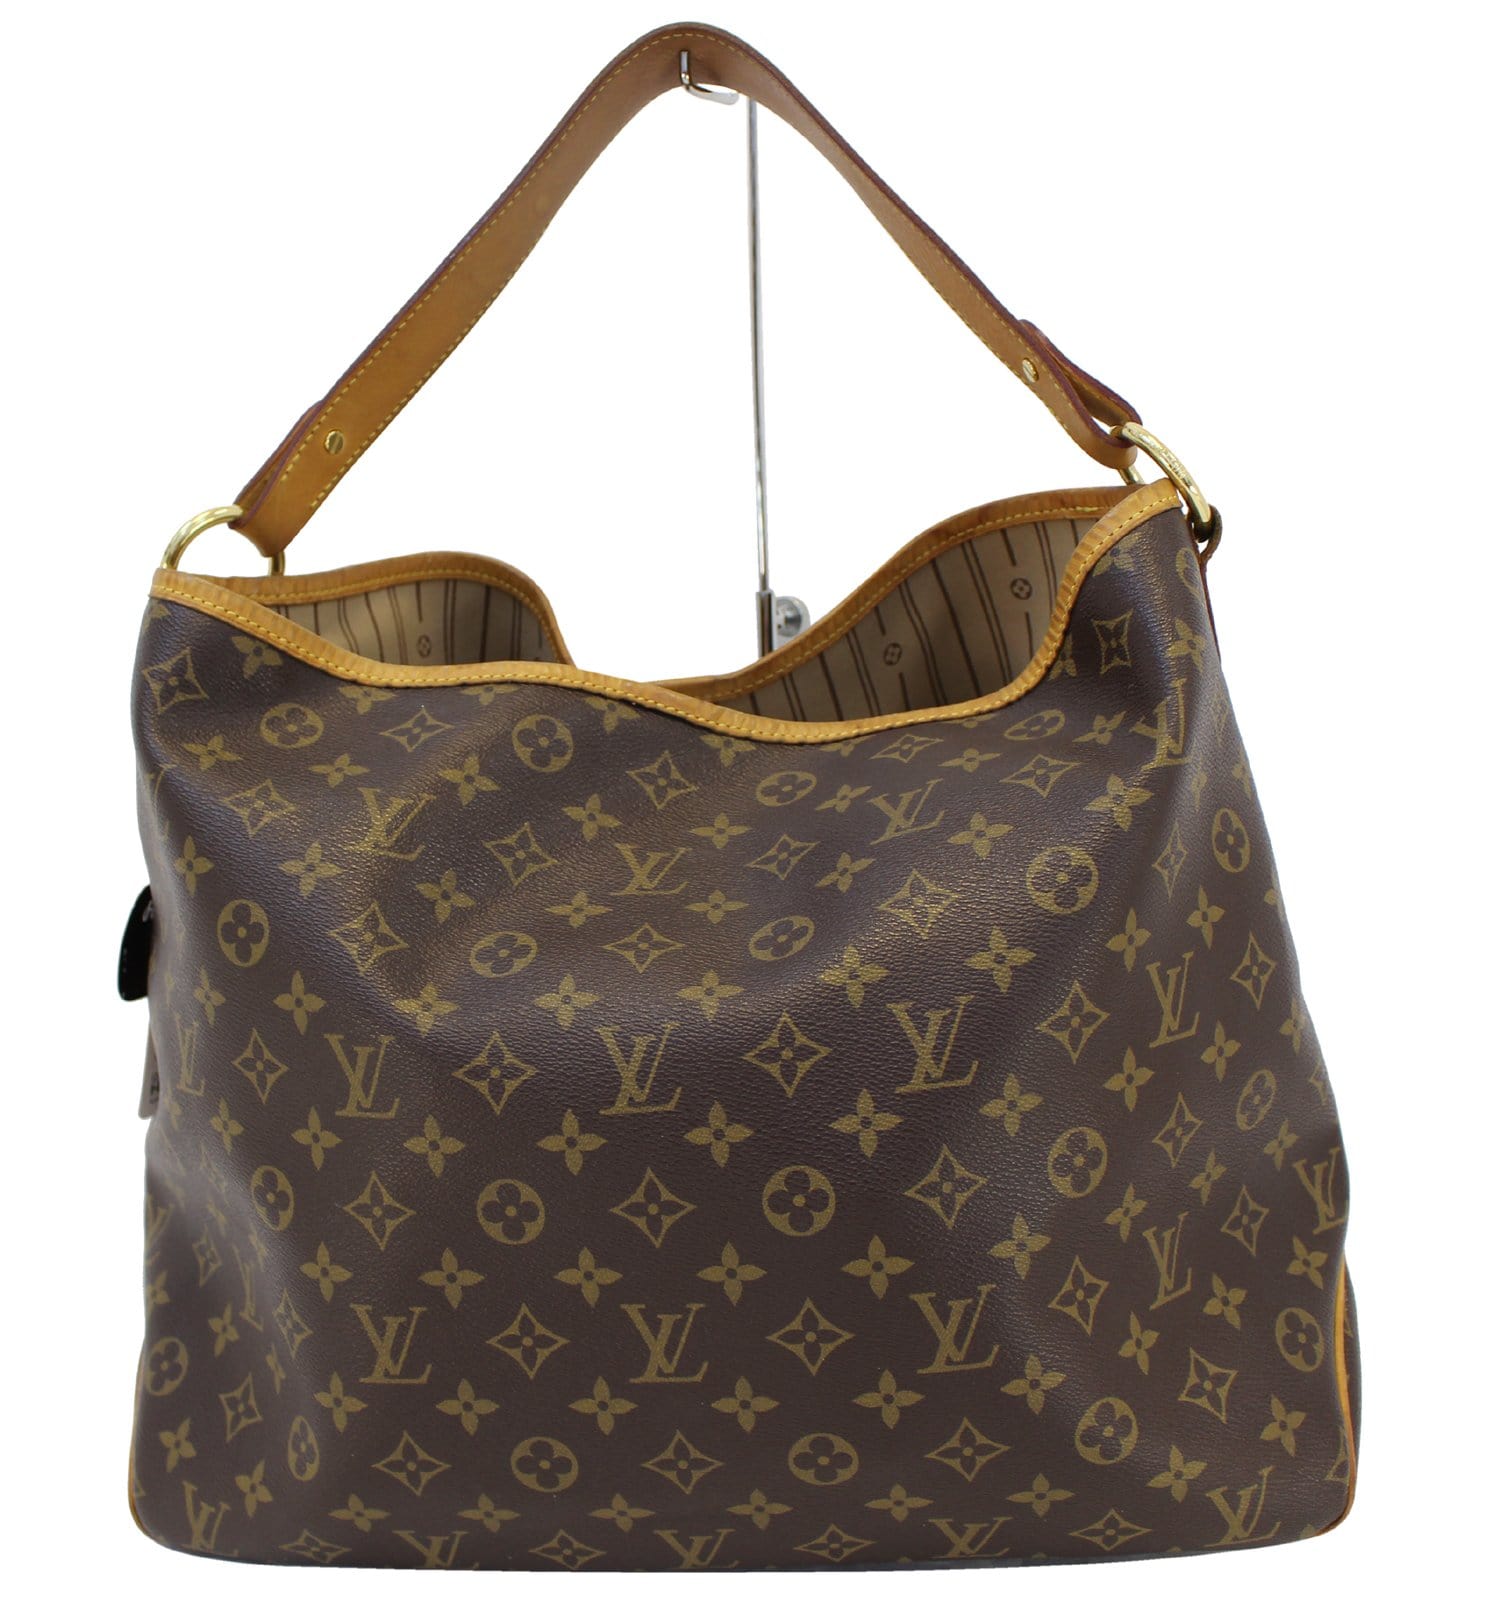 Delightful Louis Vuitton Bags - Vestiaire Collective